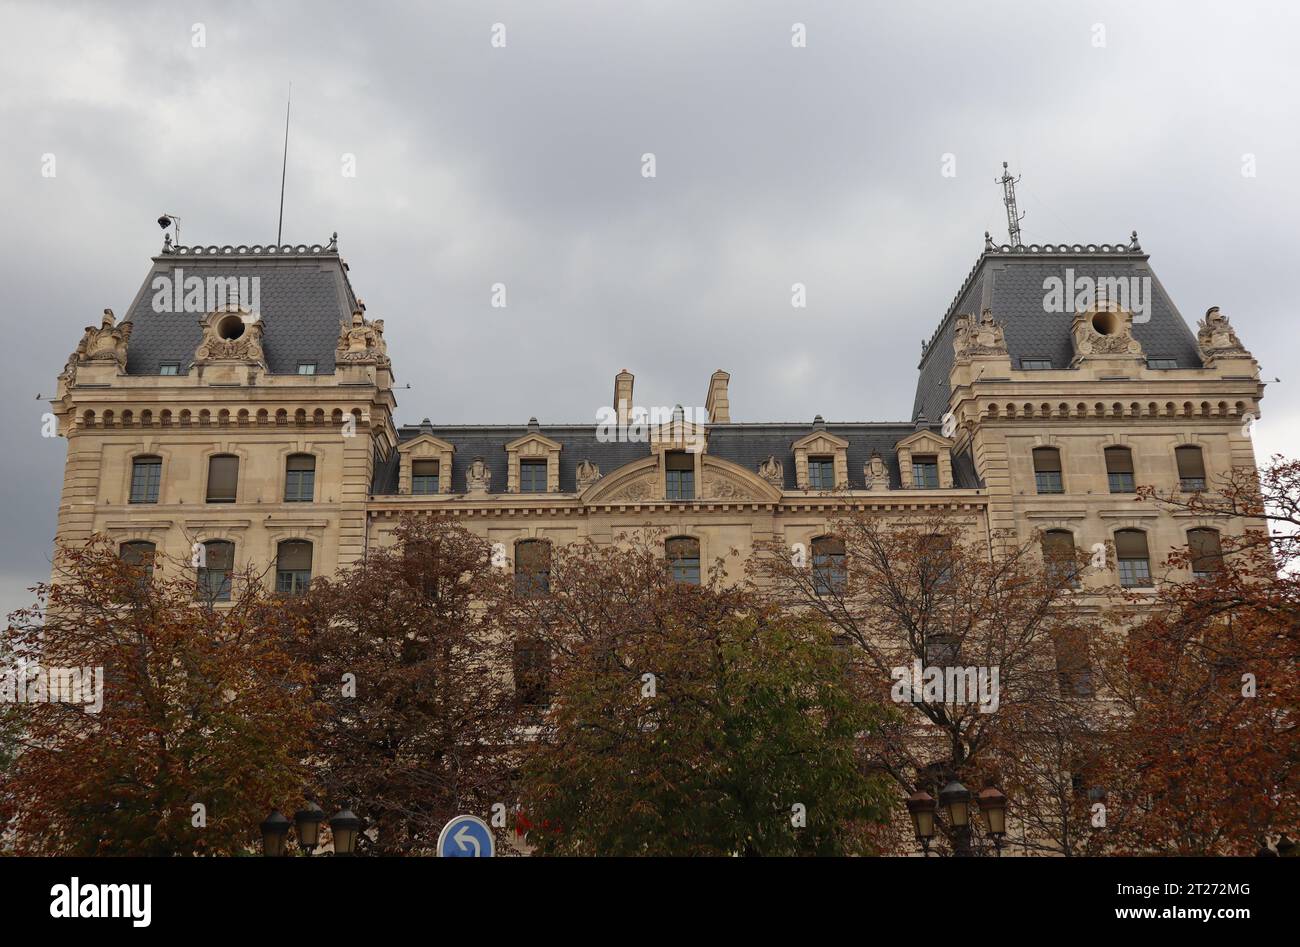 Blick auf das Apartmentgebäude und die Wohnstruktur bei trübem Wetter, Paris, Frankreich. Stockfoto